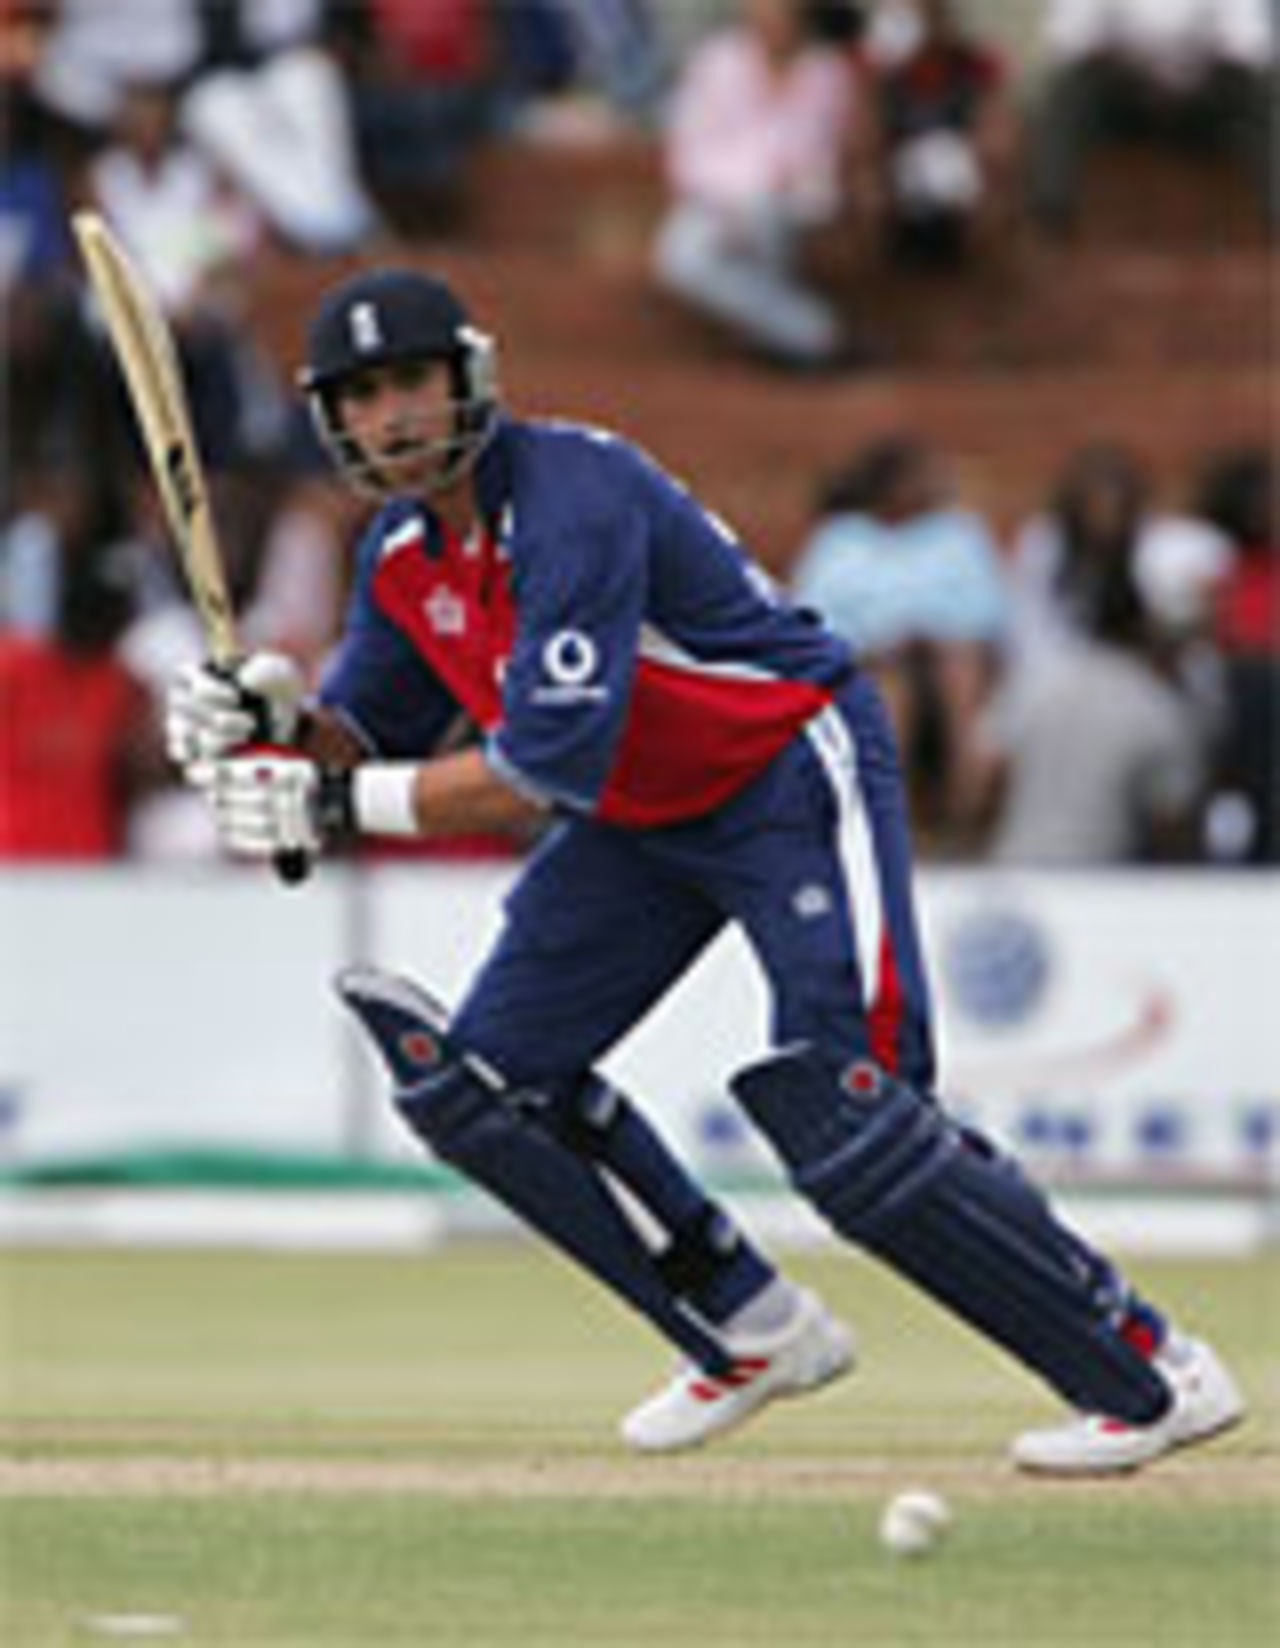 Vikram Solanki poised to strike another boundary, Zimbabwe v England, 3rd ODI, Bulawayo